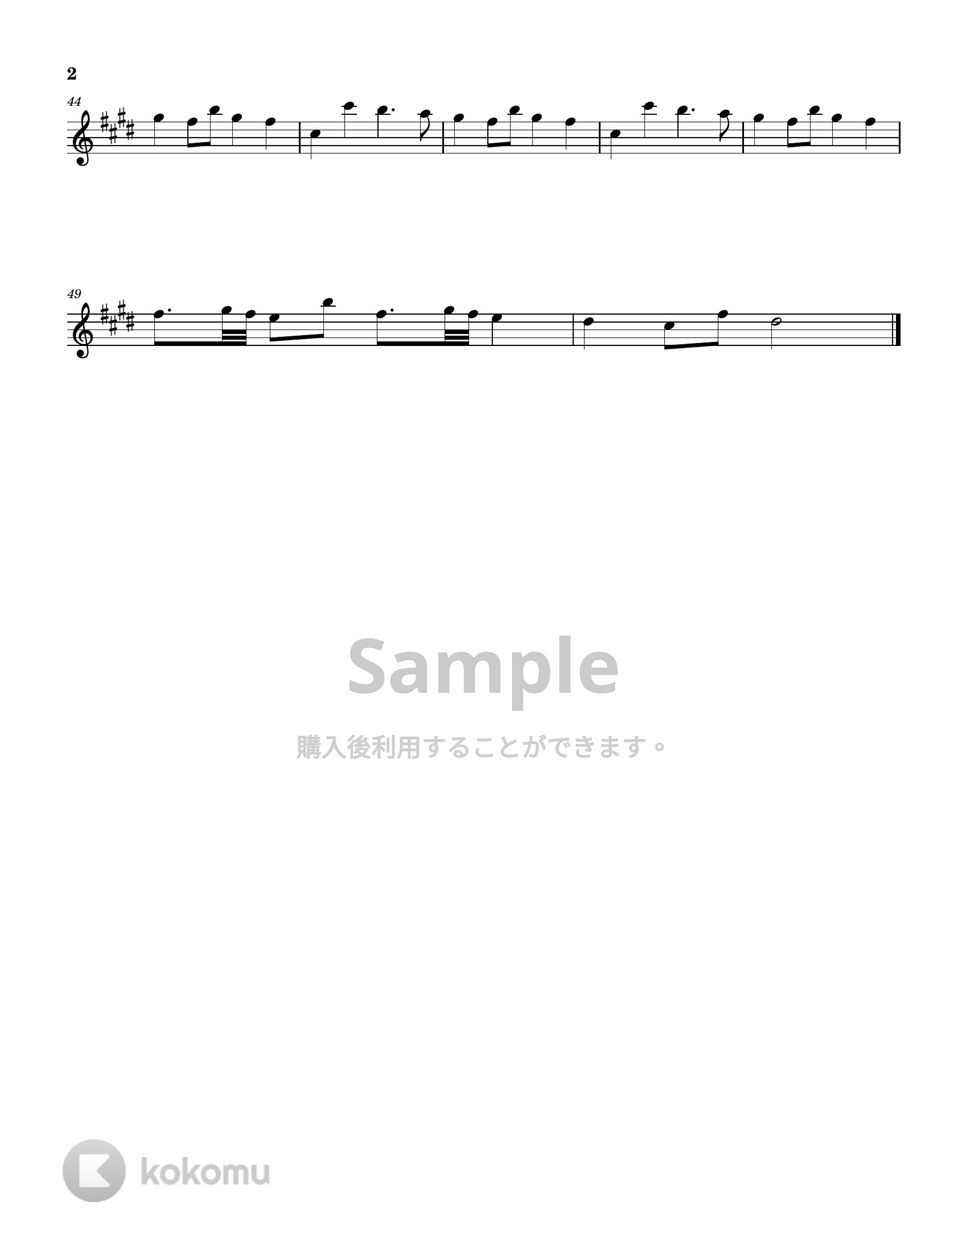 藤井風 - まつり (バイオリン譜) by Coronyan Violin